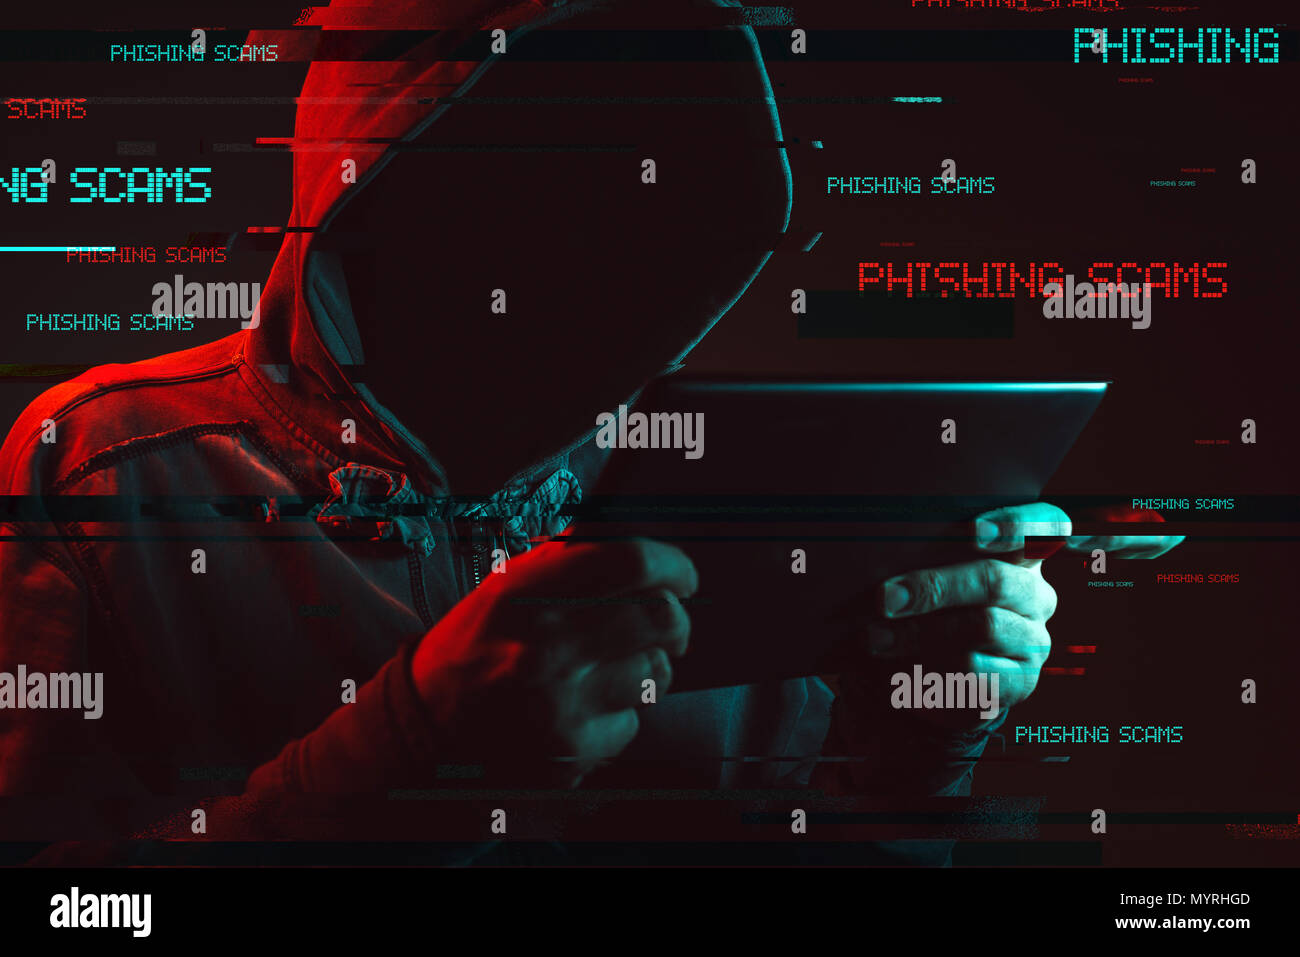 Phishing Scams Konzept mit gesichtslosen Hooded männliche Person, Low Key rot und blau beleuchtete Bild und digitale glitch Wirkung Stockfoto